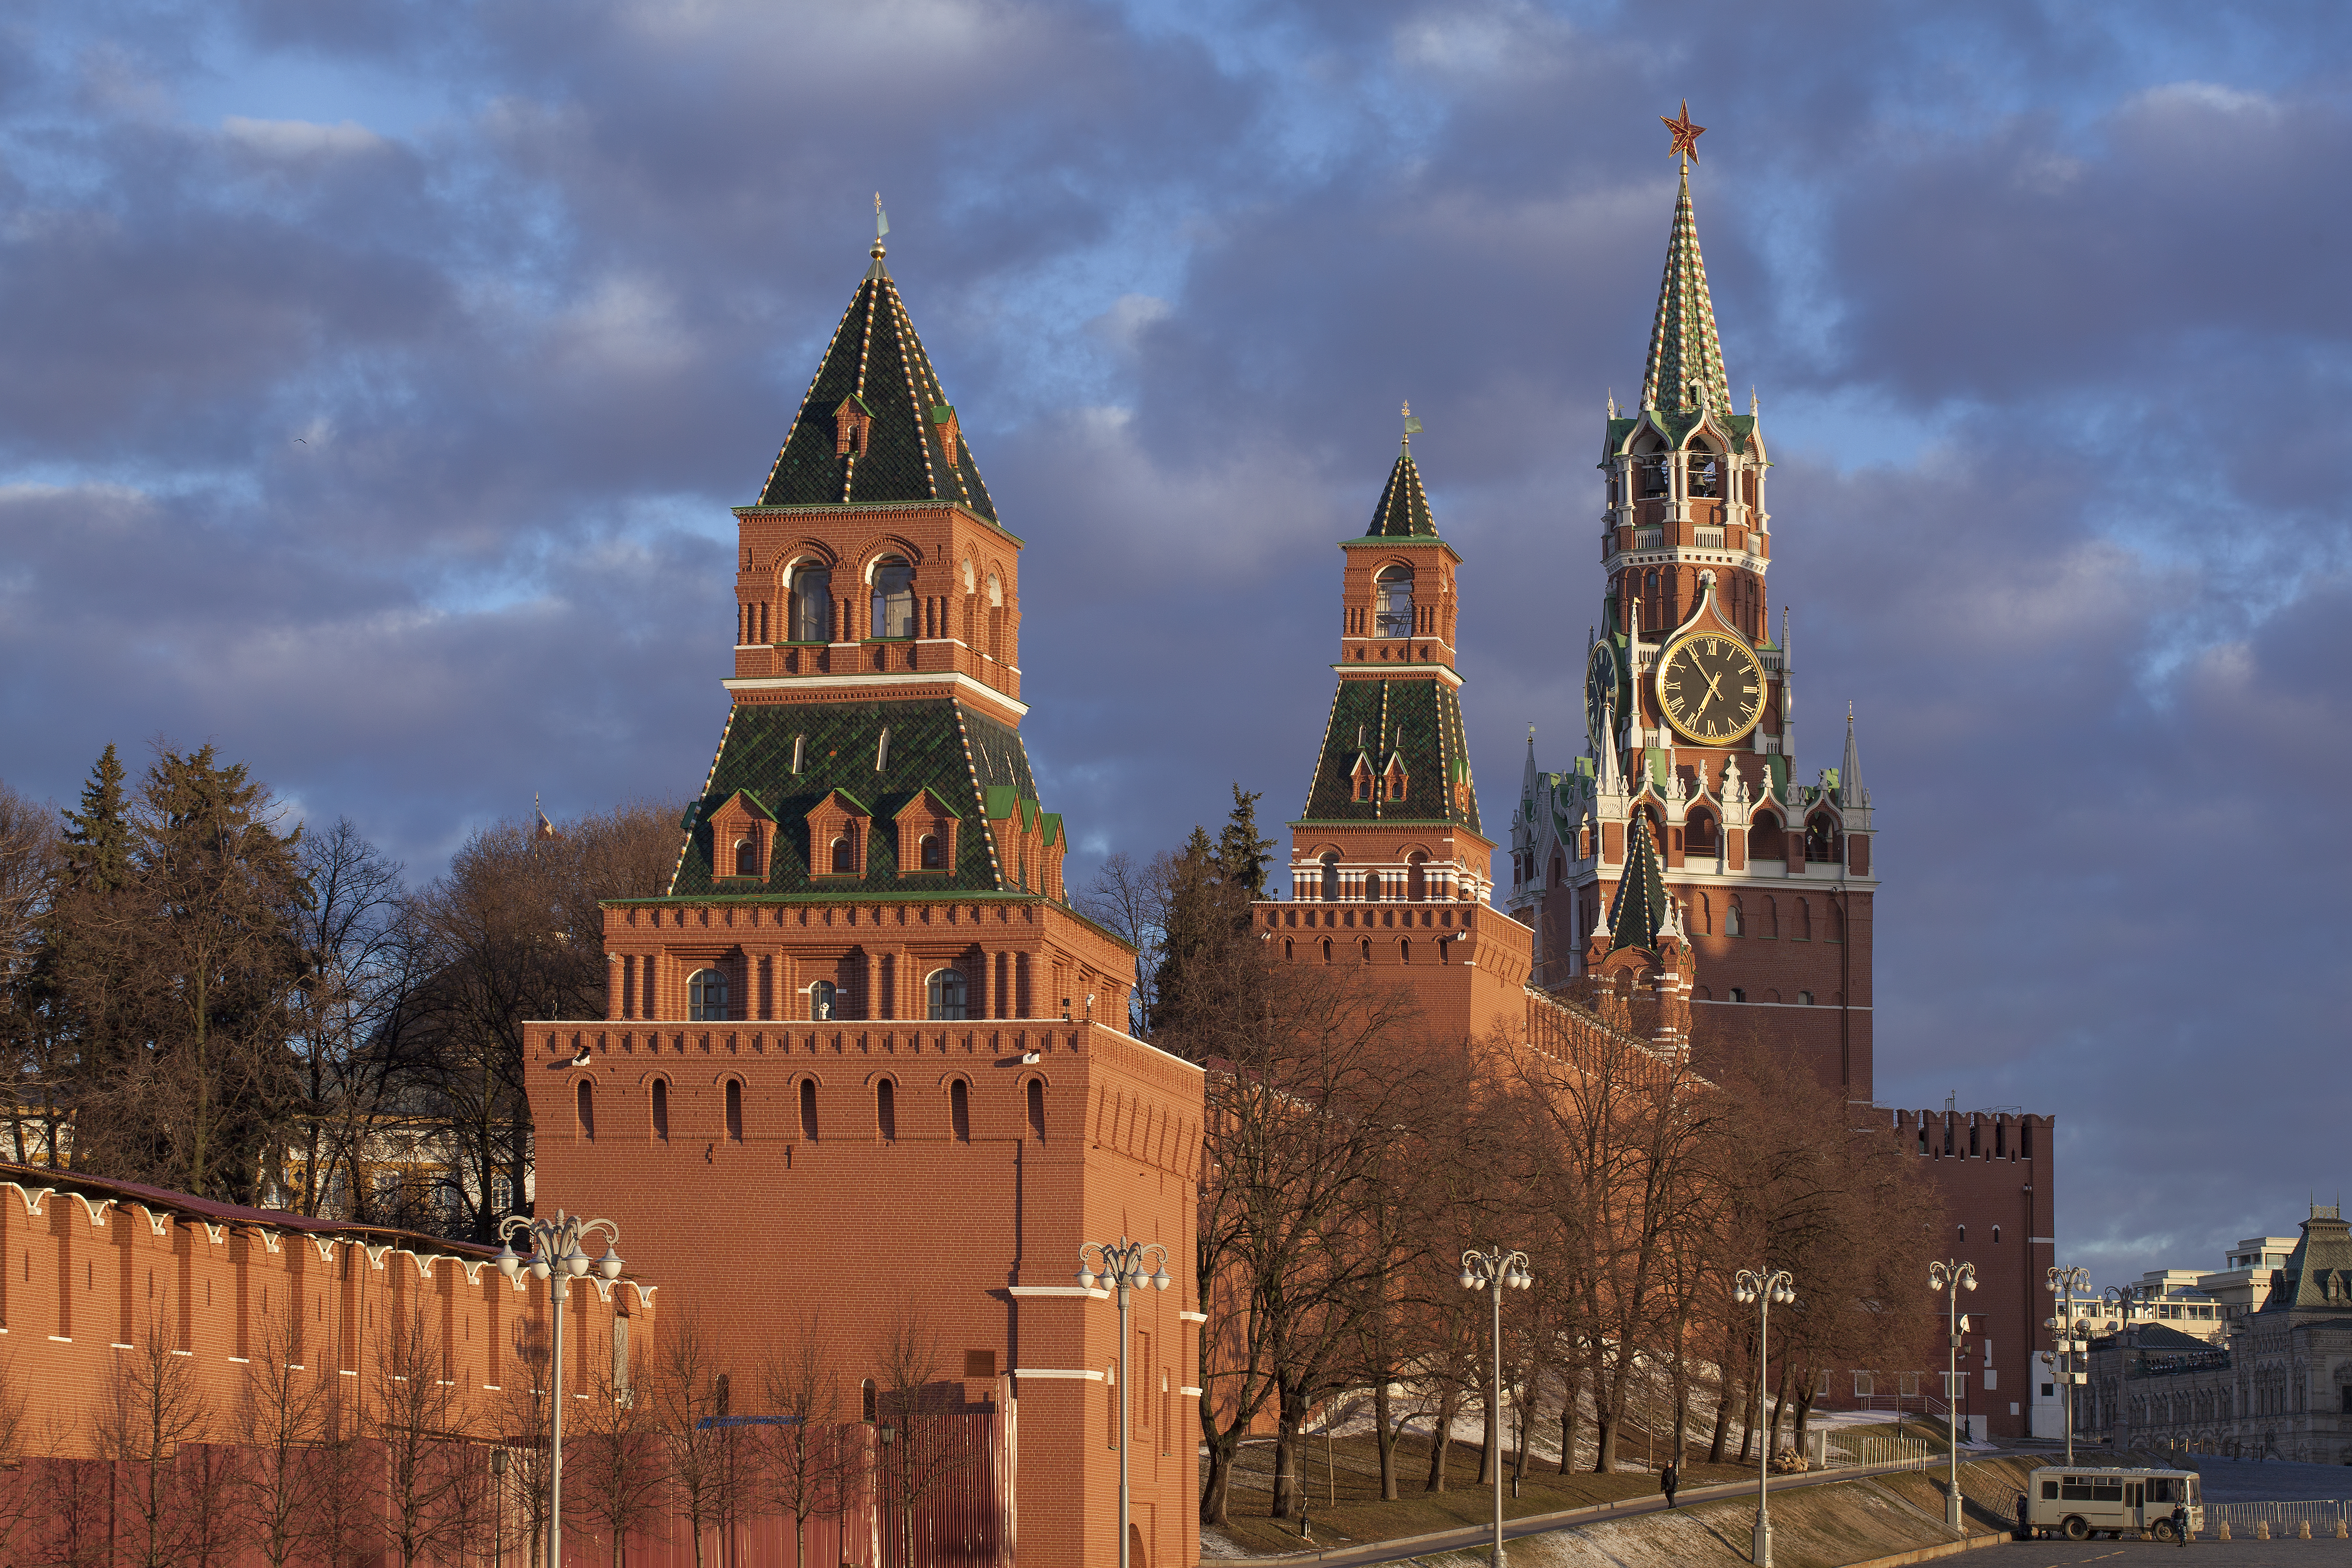 Через какие башни можно войти в кремль. Стены и башни Московского Кремля. Кремль башни Московского Кремля. Стены Московского Кремля 20 башен. Стены Московского Кремля (20 башен), 1516.